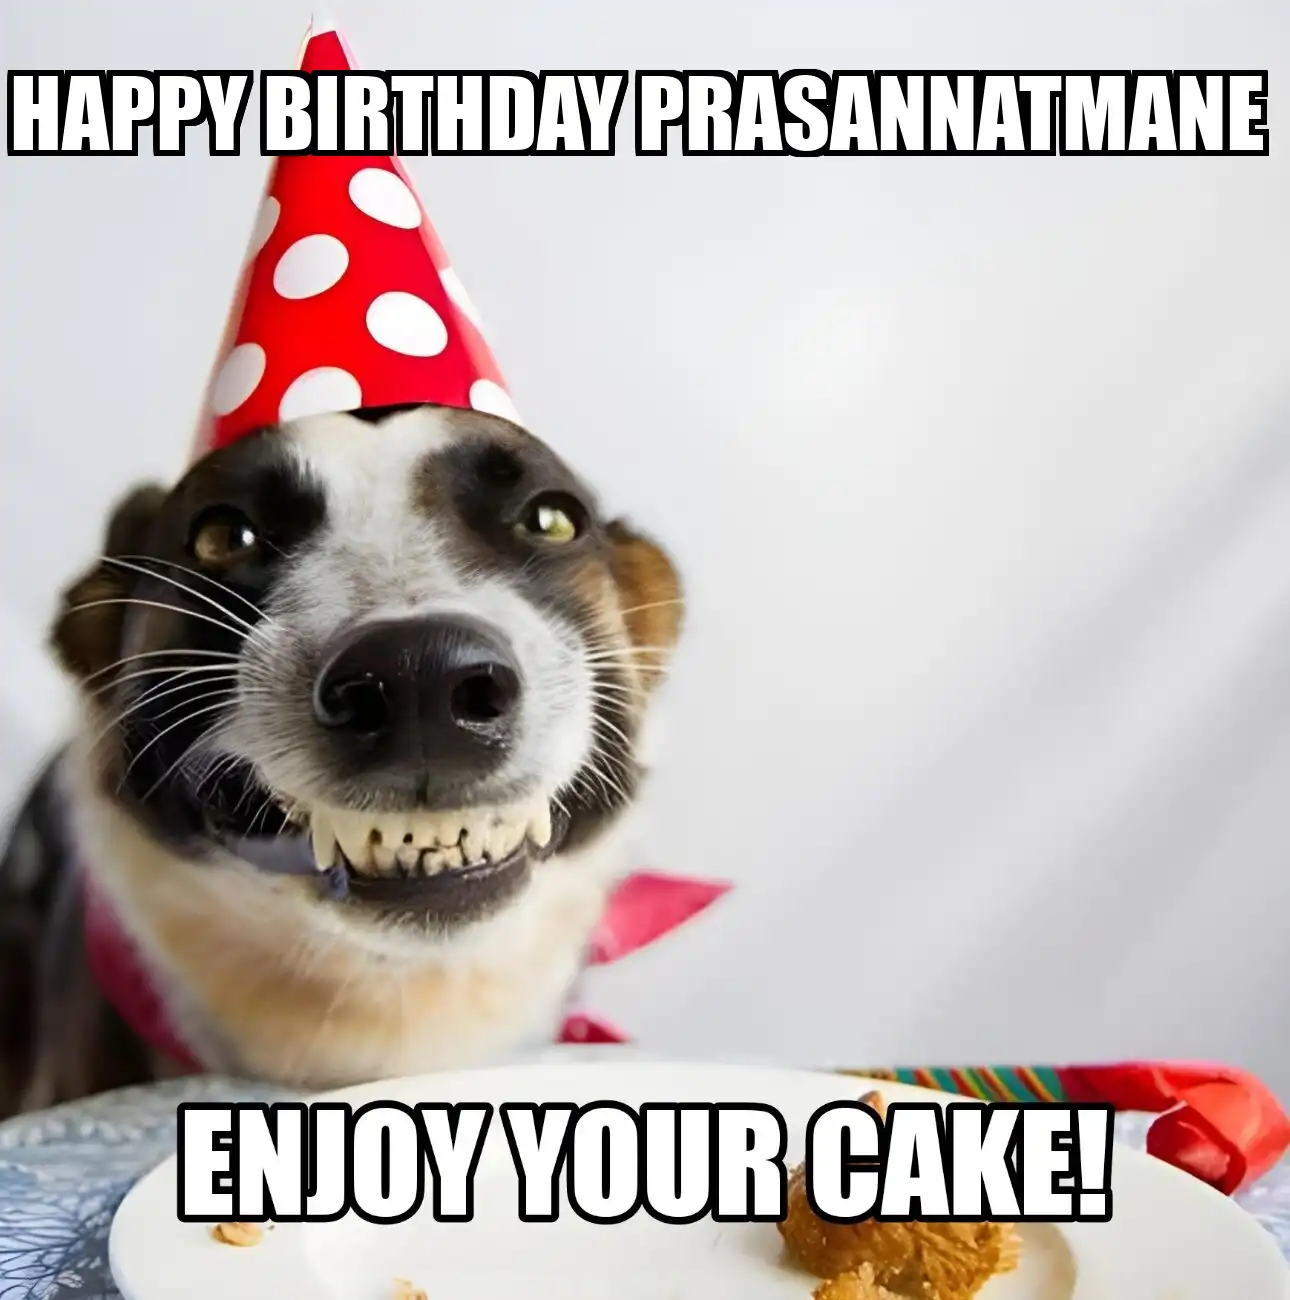 Happy Birthday Prasannatmane Enjoy Your Cake Dog Meme